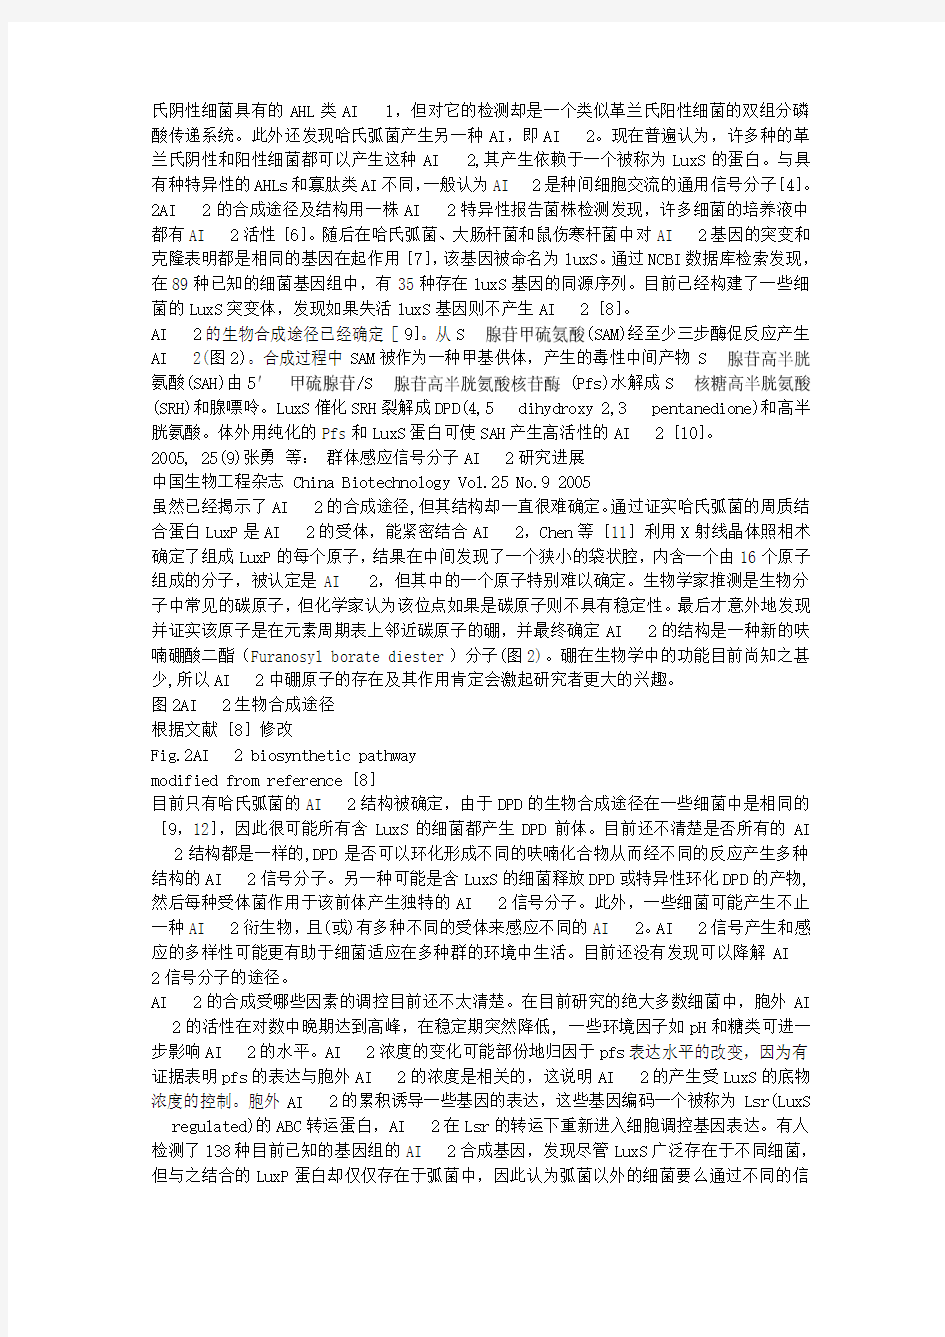 中国生物工程杂志China Biotechnology, 2005, 25(9)14～19